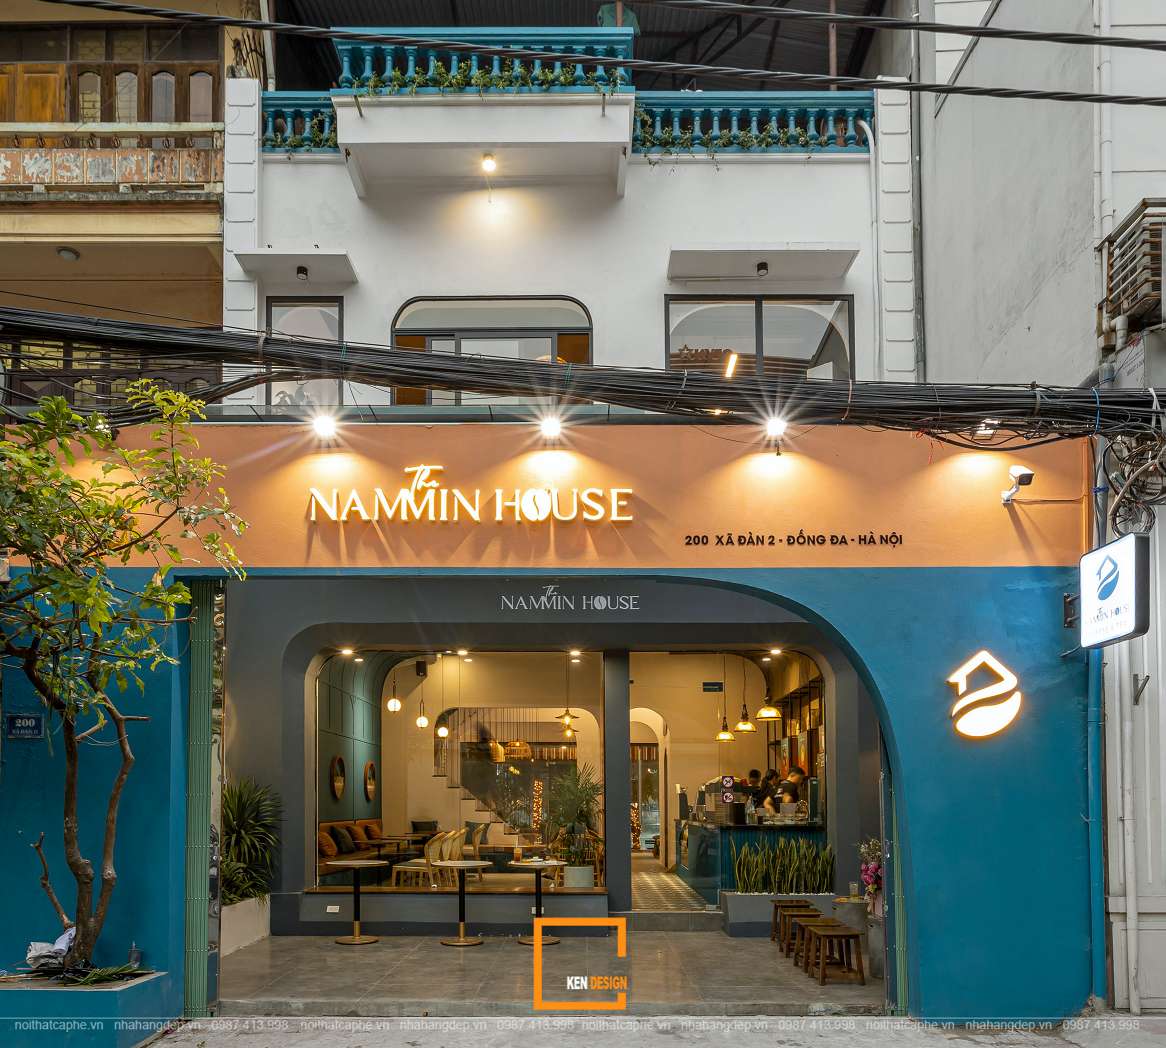 Thiết kế quán cà phê The Nammin House tại Hà Nội